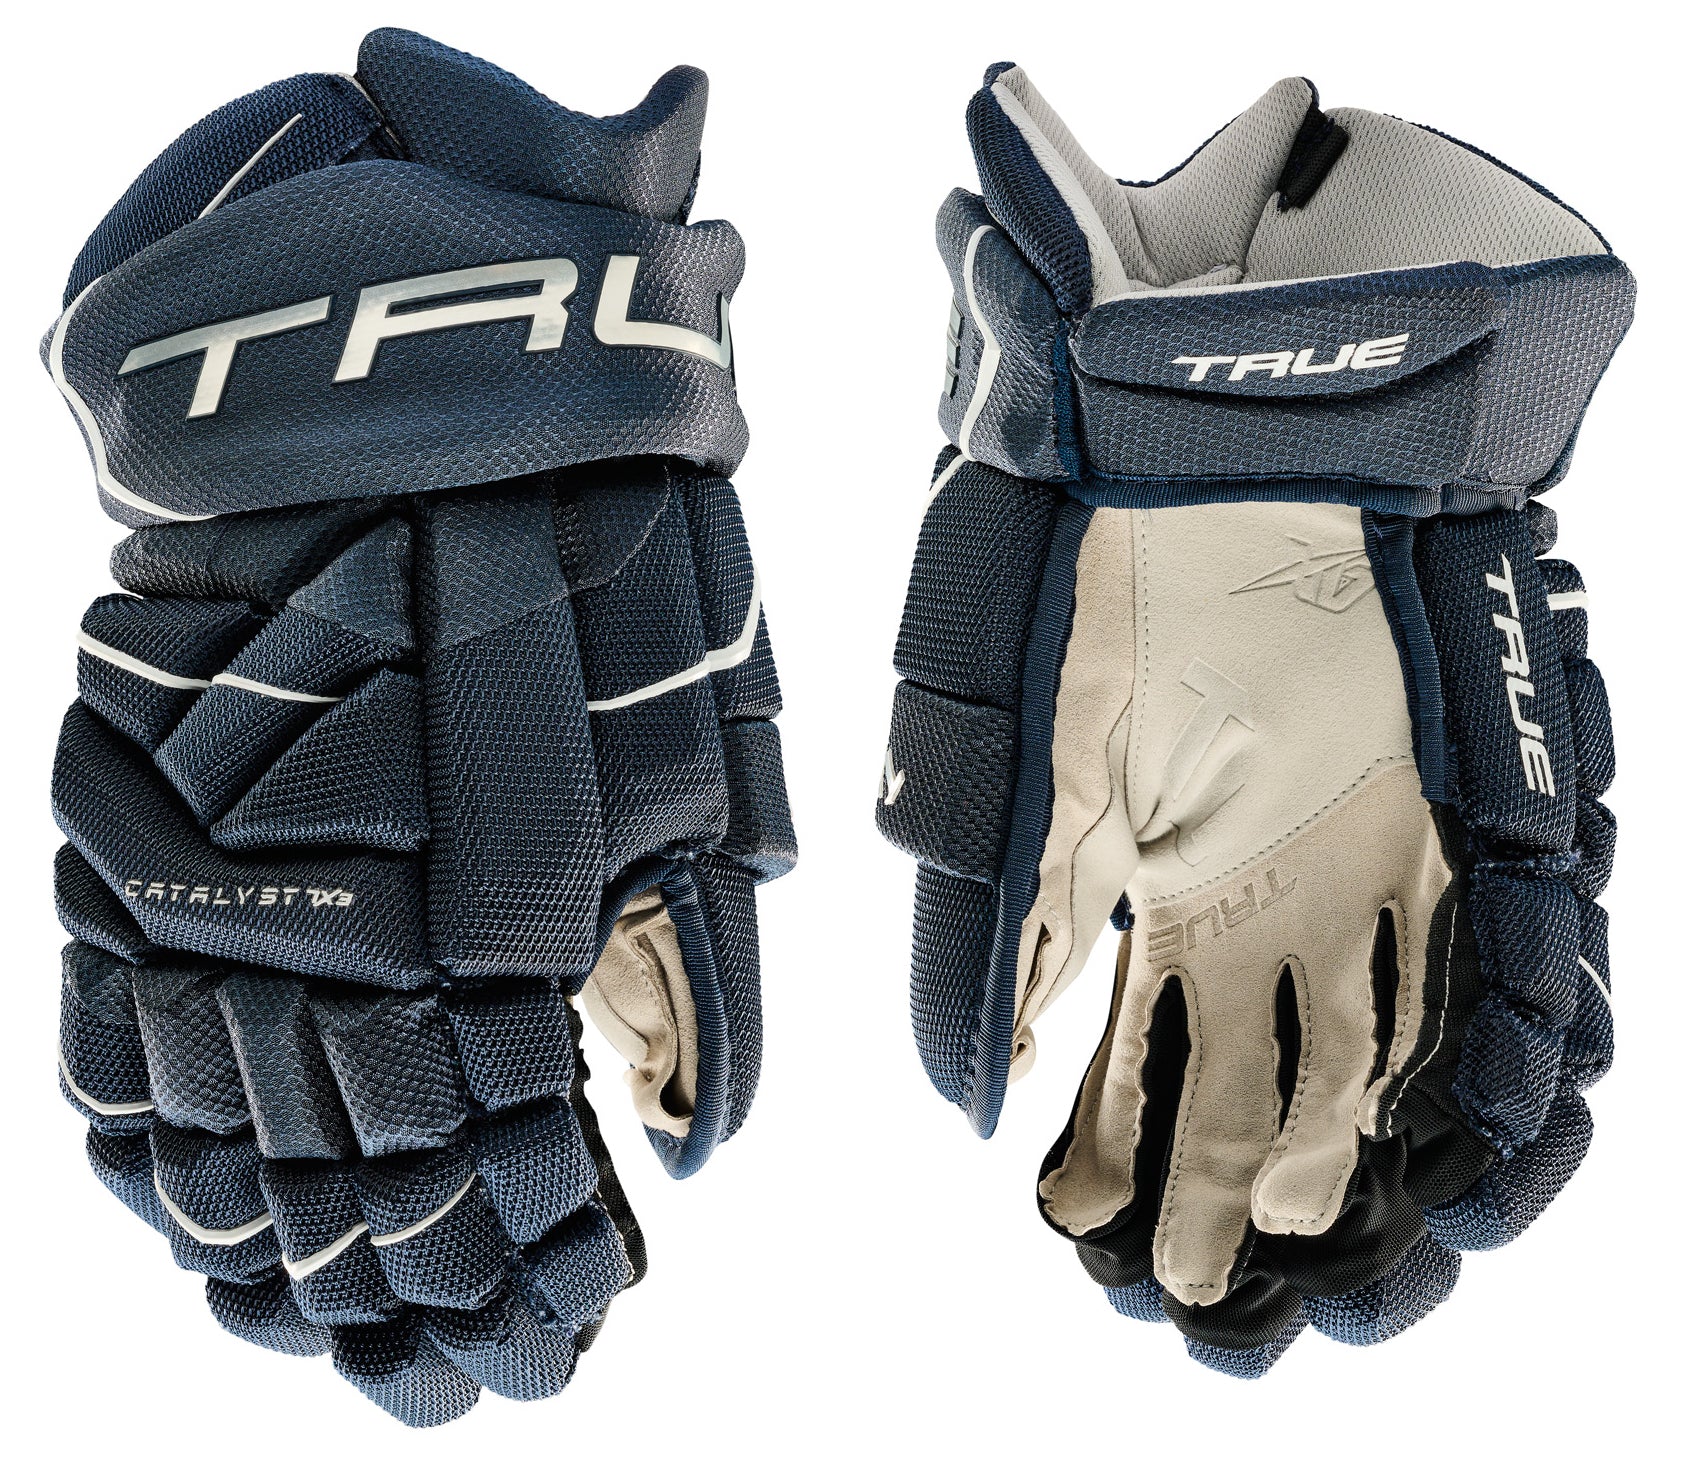 True Catalyst 7X3 Junior Hockey Gloves